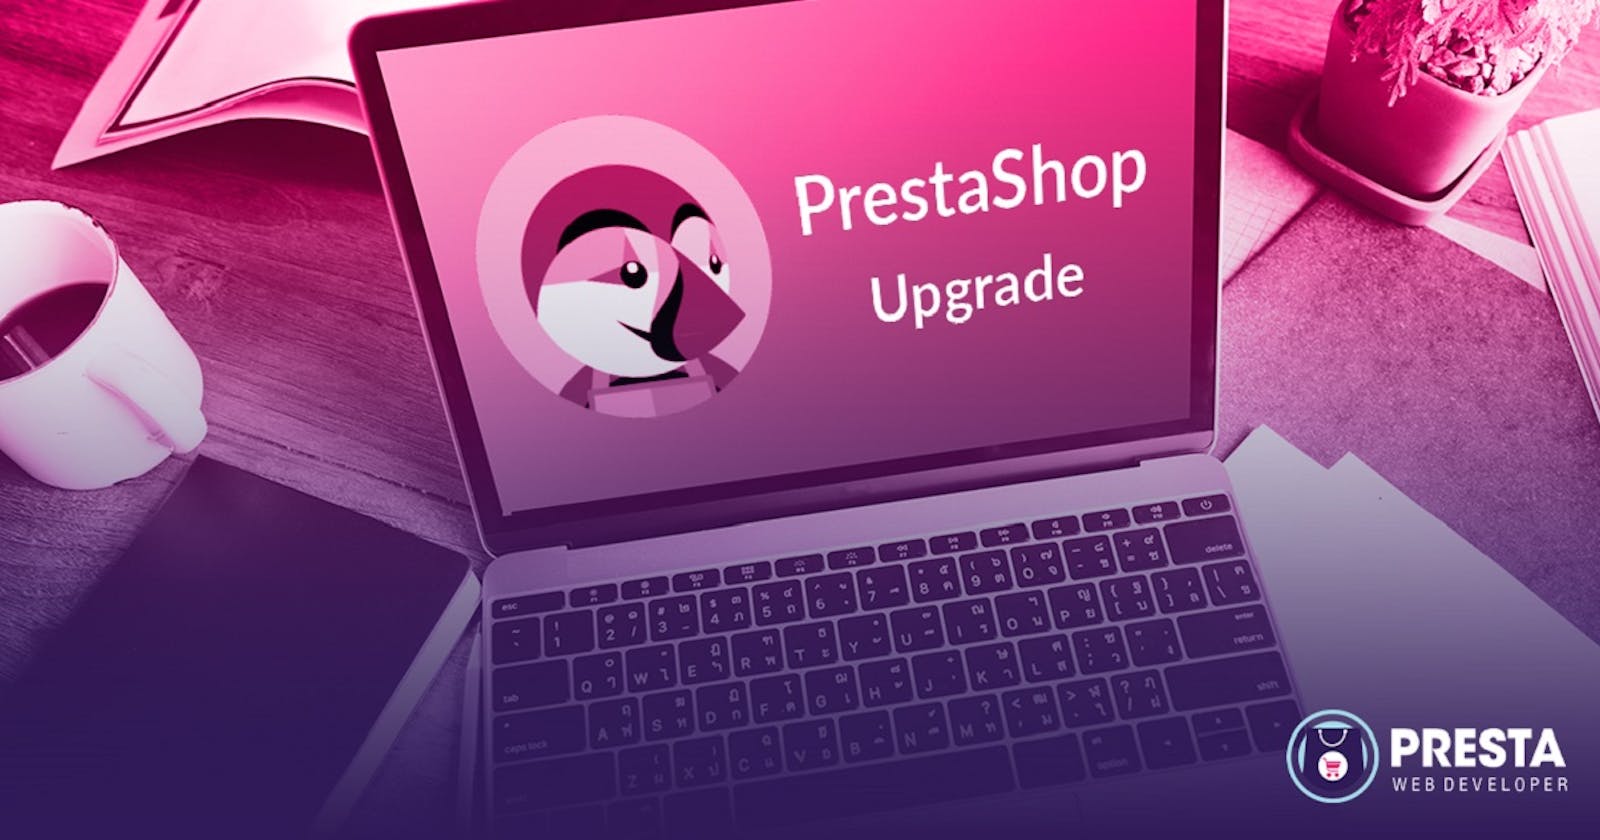 Upgrade to PrestaShop 8: Get New Features